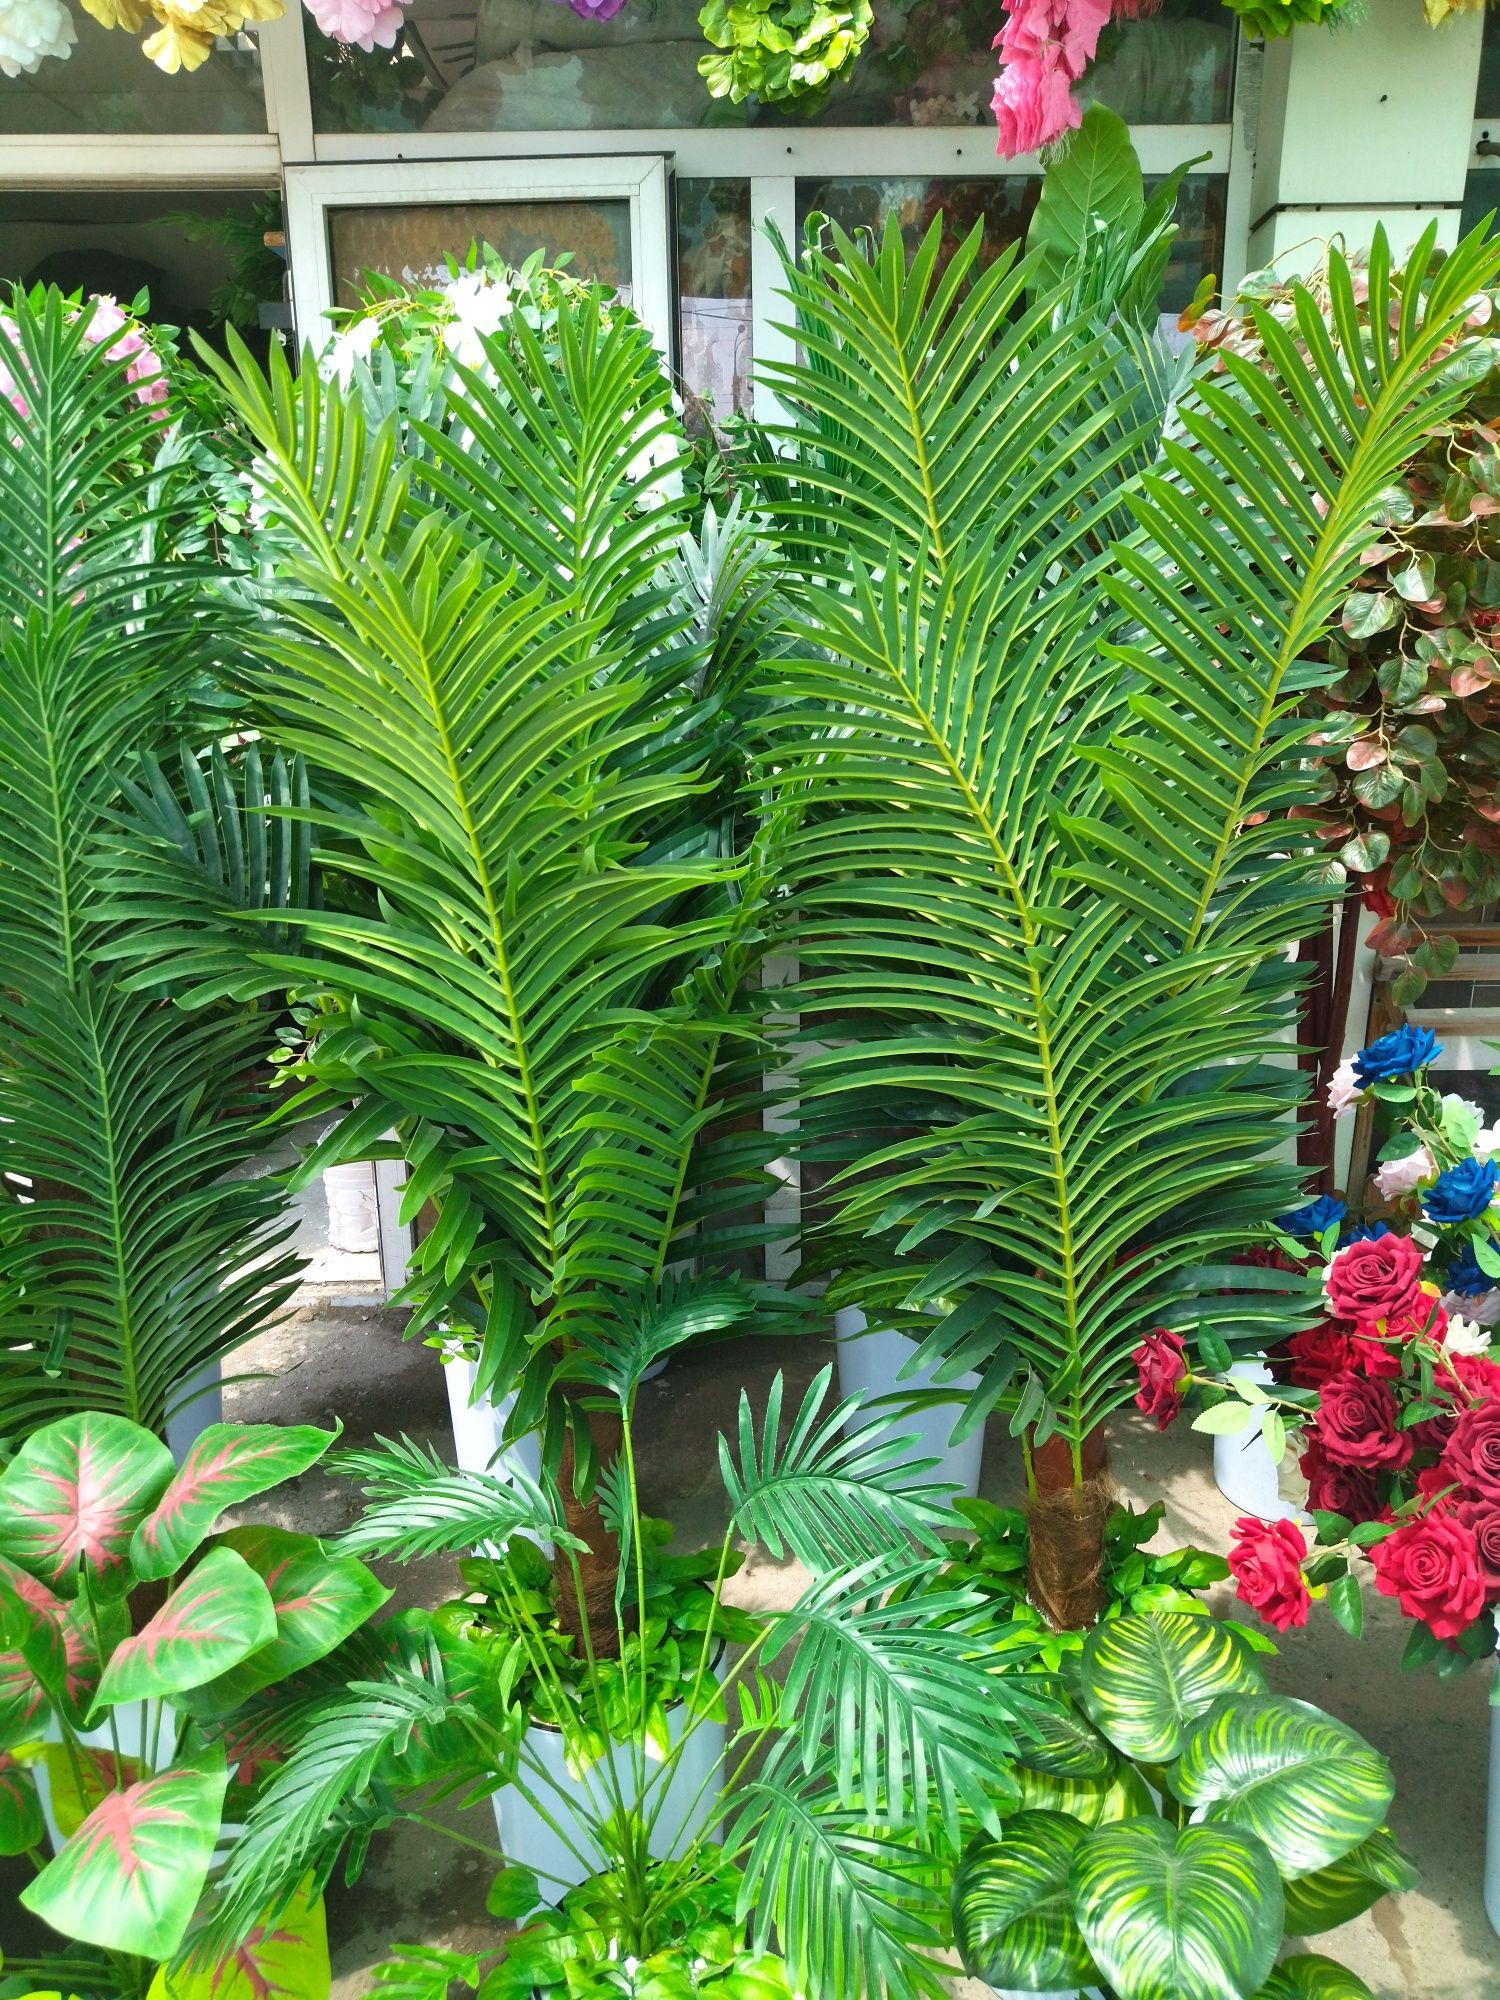 Sifati narxidan baland sunniy palma daraxtlari tayorlab beramiz.